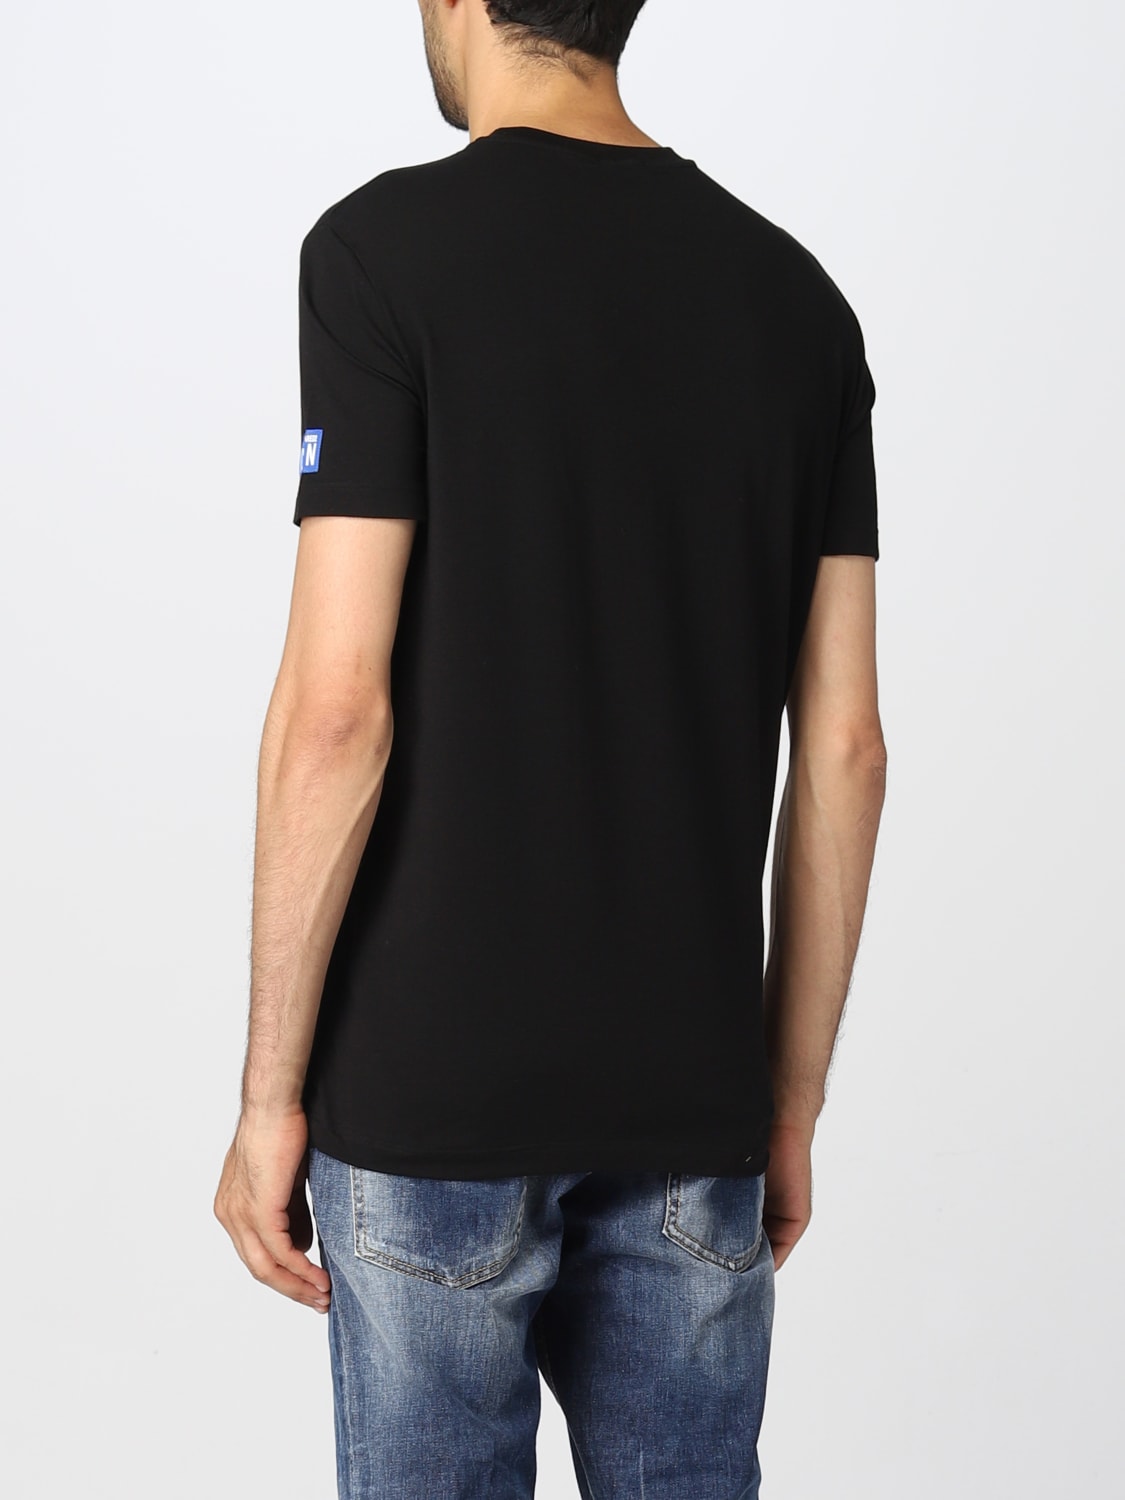 DSQUARED2: t-shirt for man - Black | Dsquared2 t-shirt D9M204720 online ...